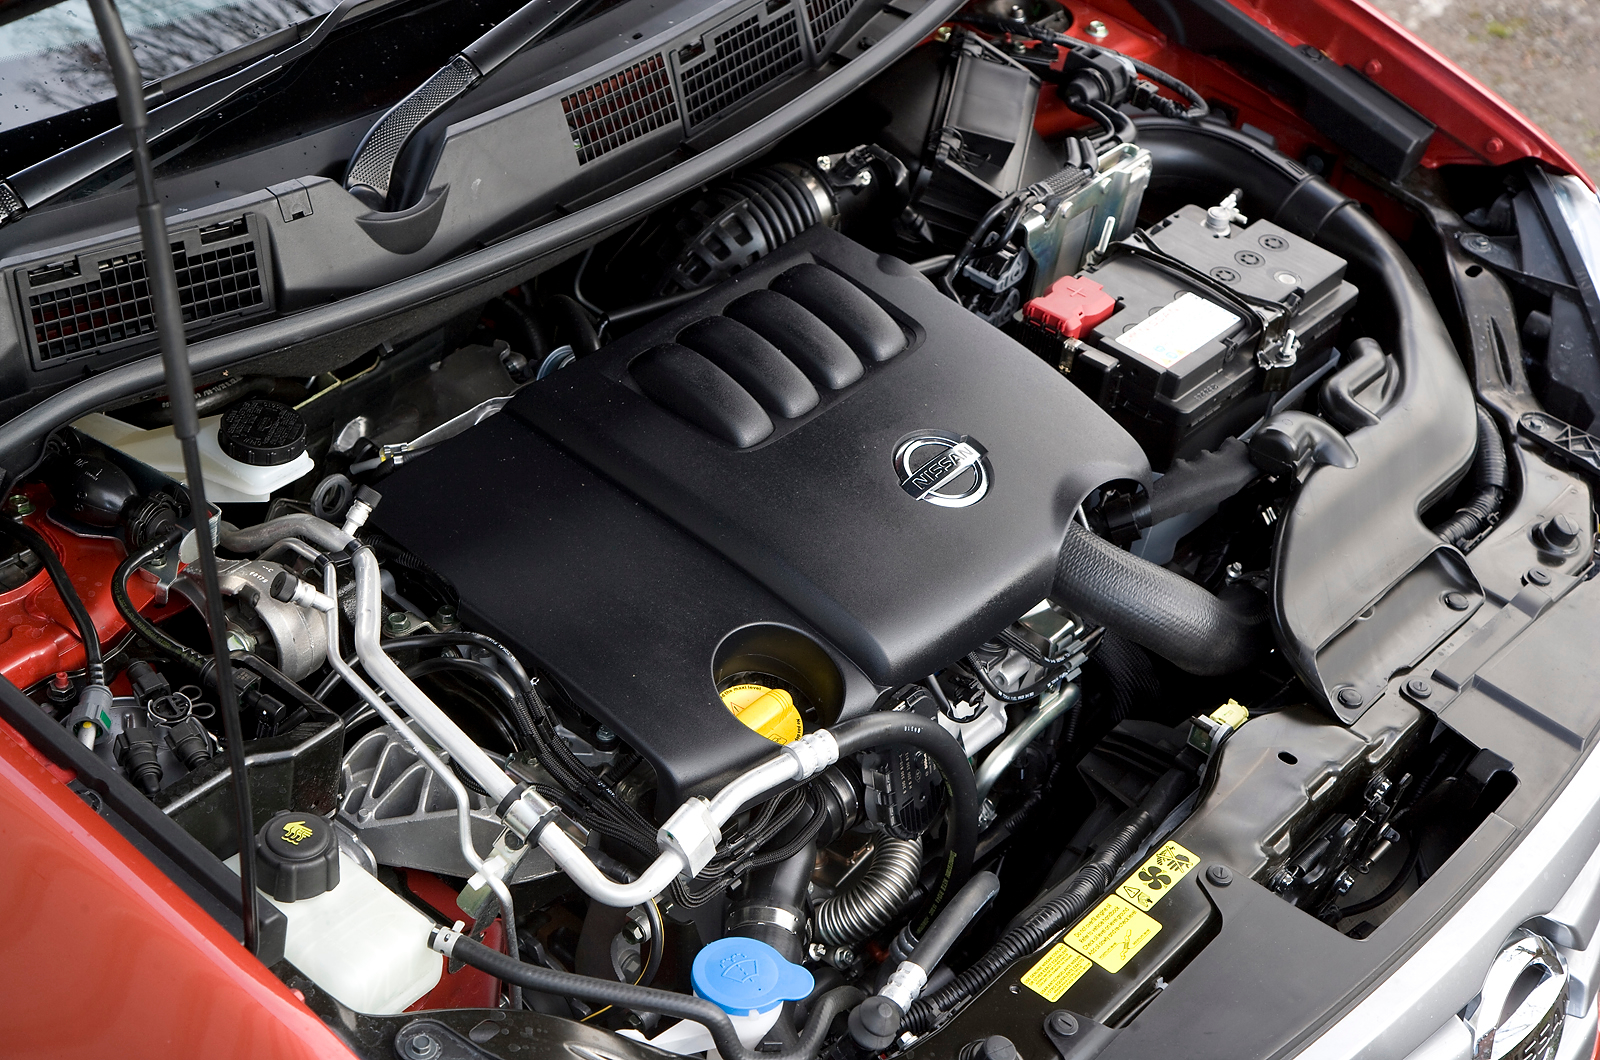 2.0-litre Nissan Qashqai turbodiesel engine